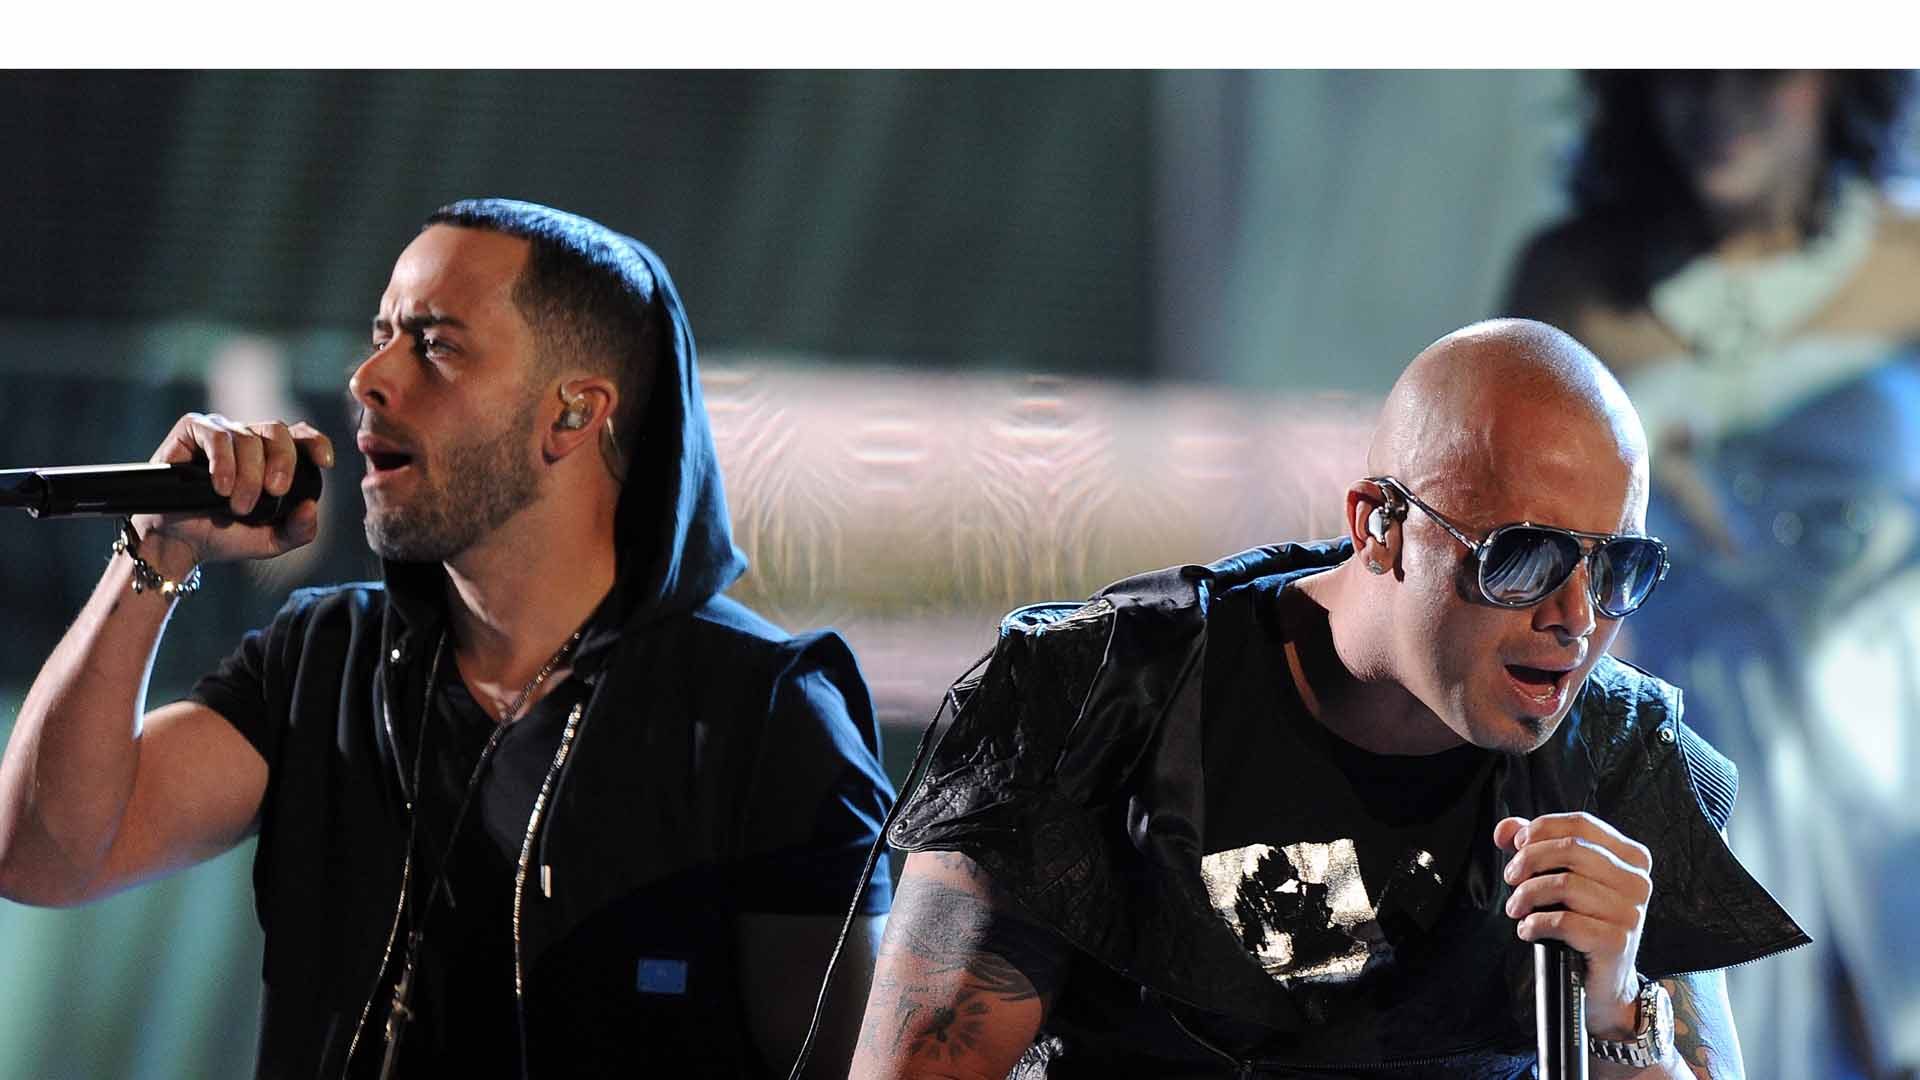 Durante un concierto en Puerto Rico el dúo de regetoneros confirmó su regreso luego de cuatro años separados